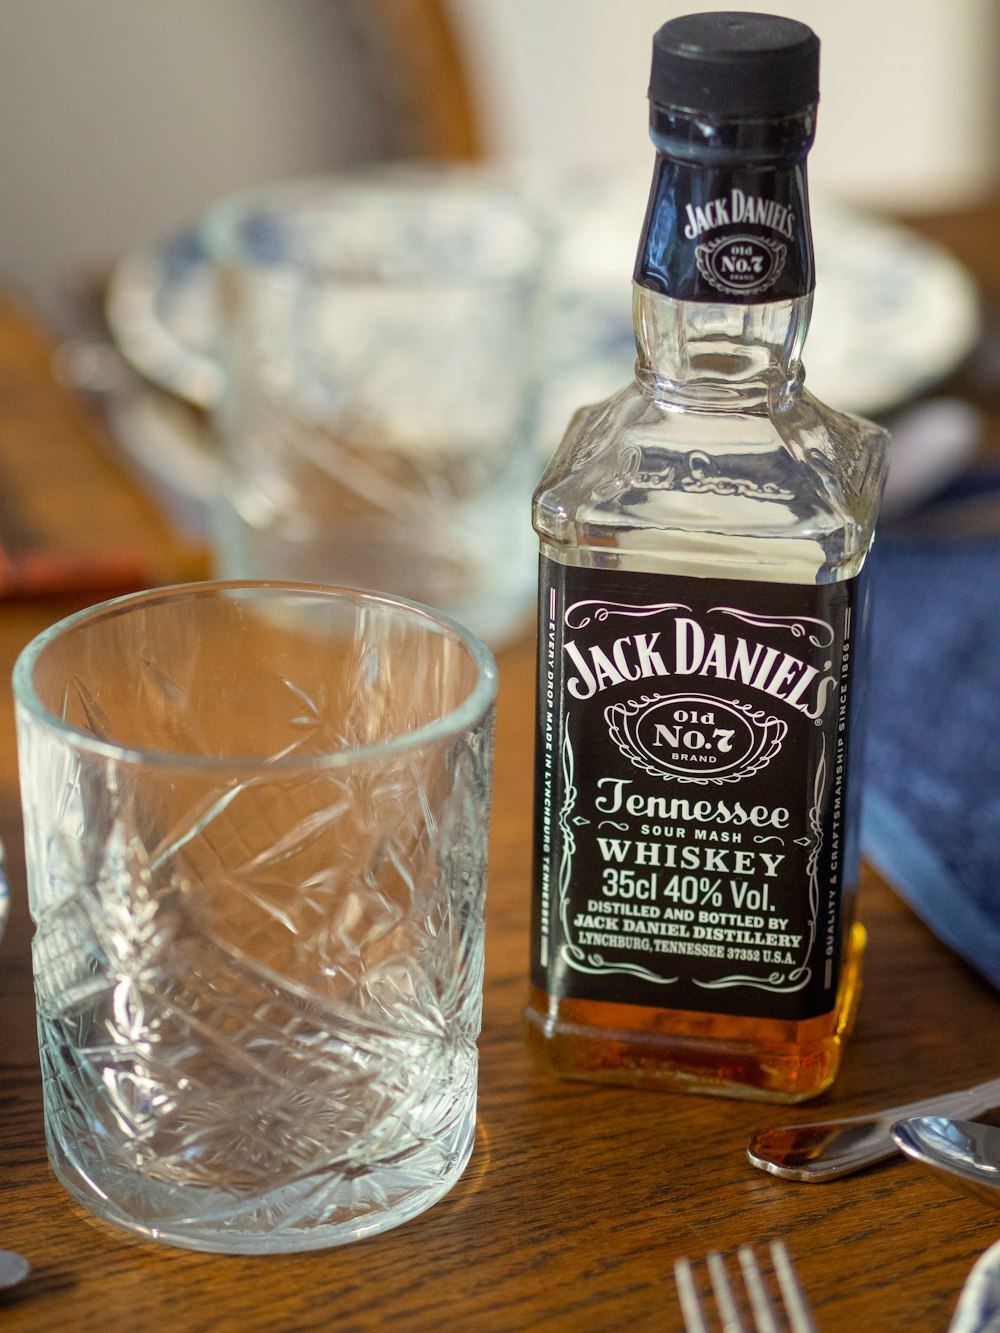 empty cup beside Jack Daniel's bottle